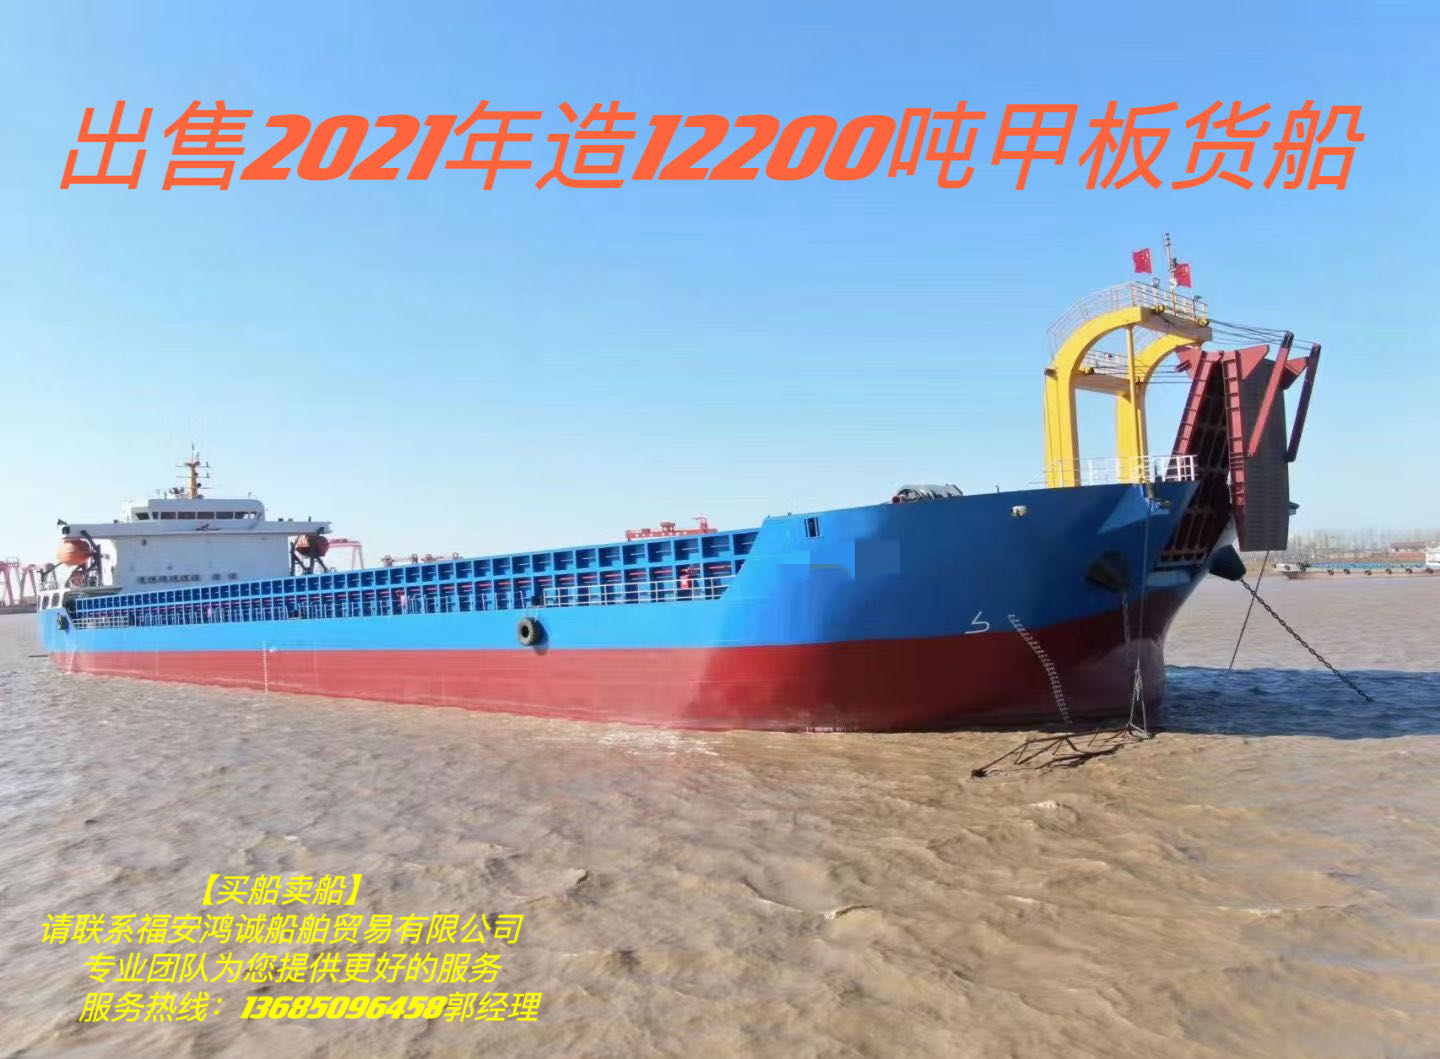 出售2021年造12200吨甲板货船